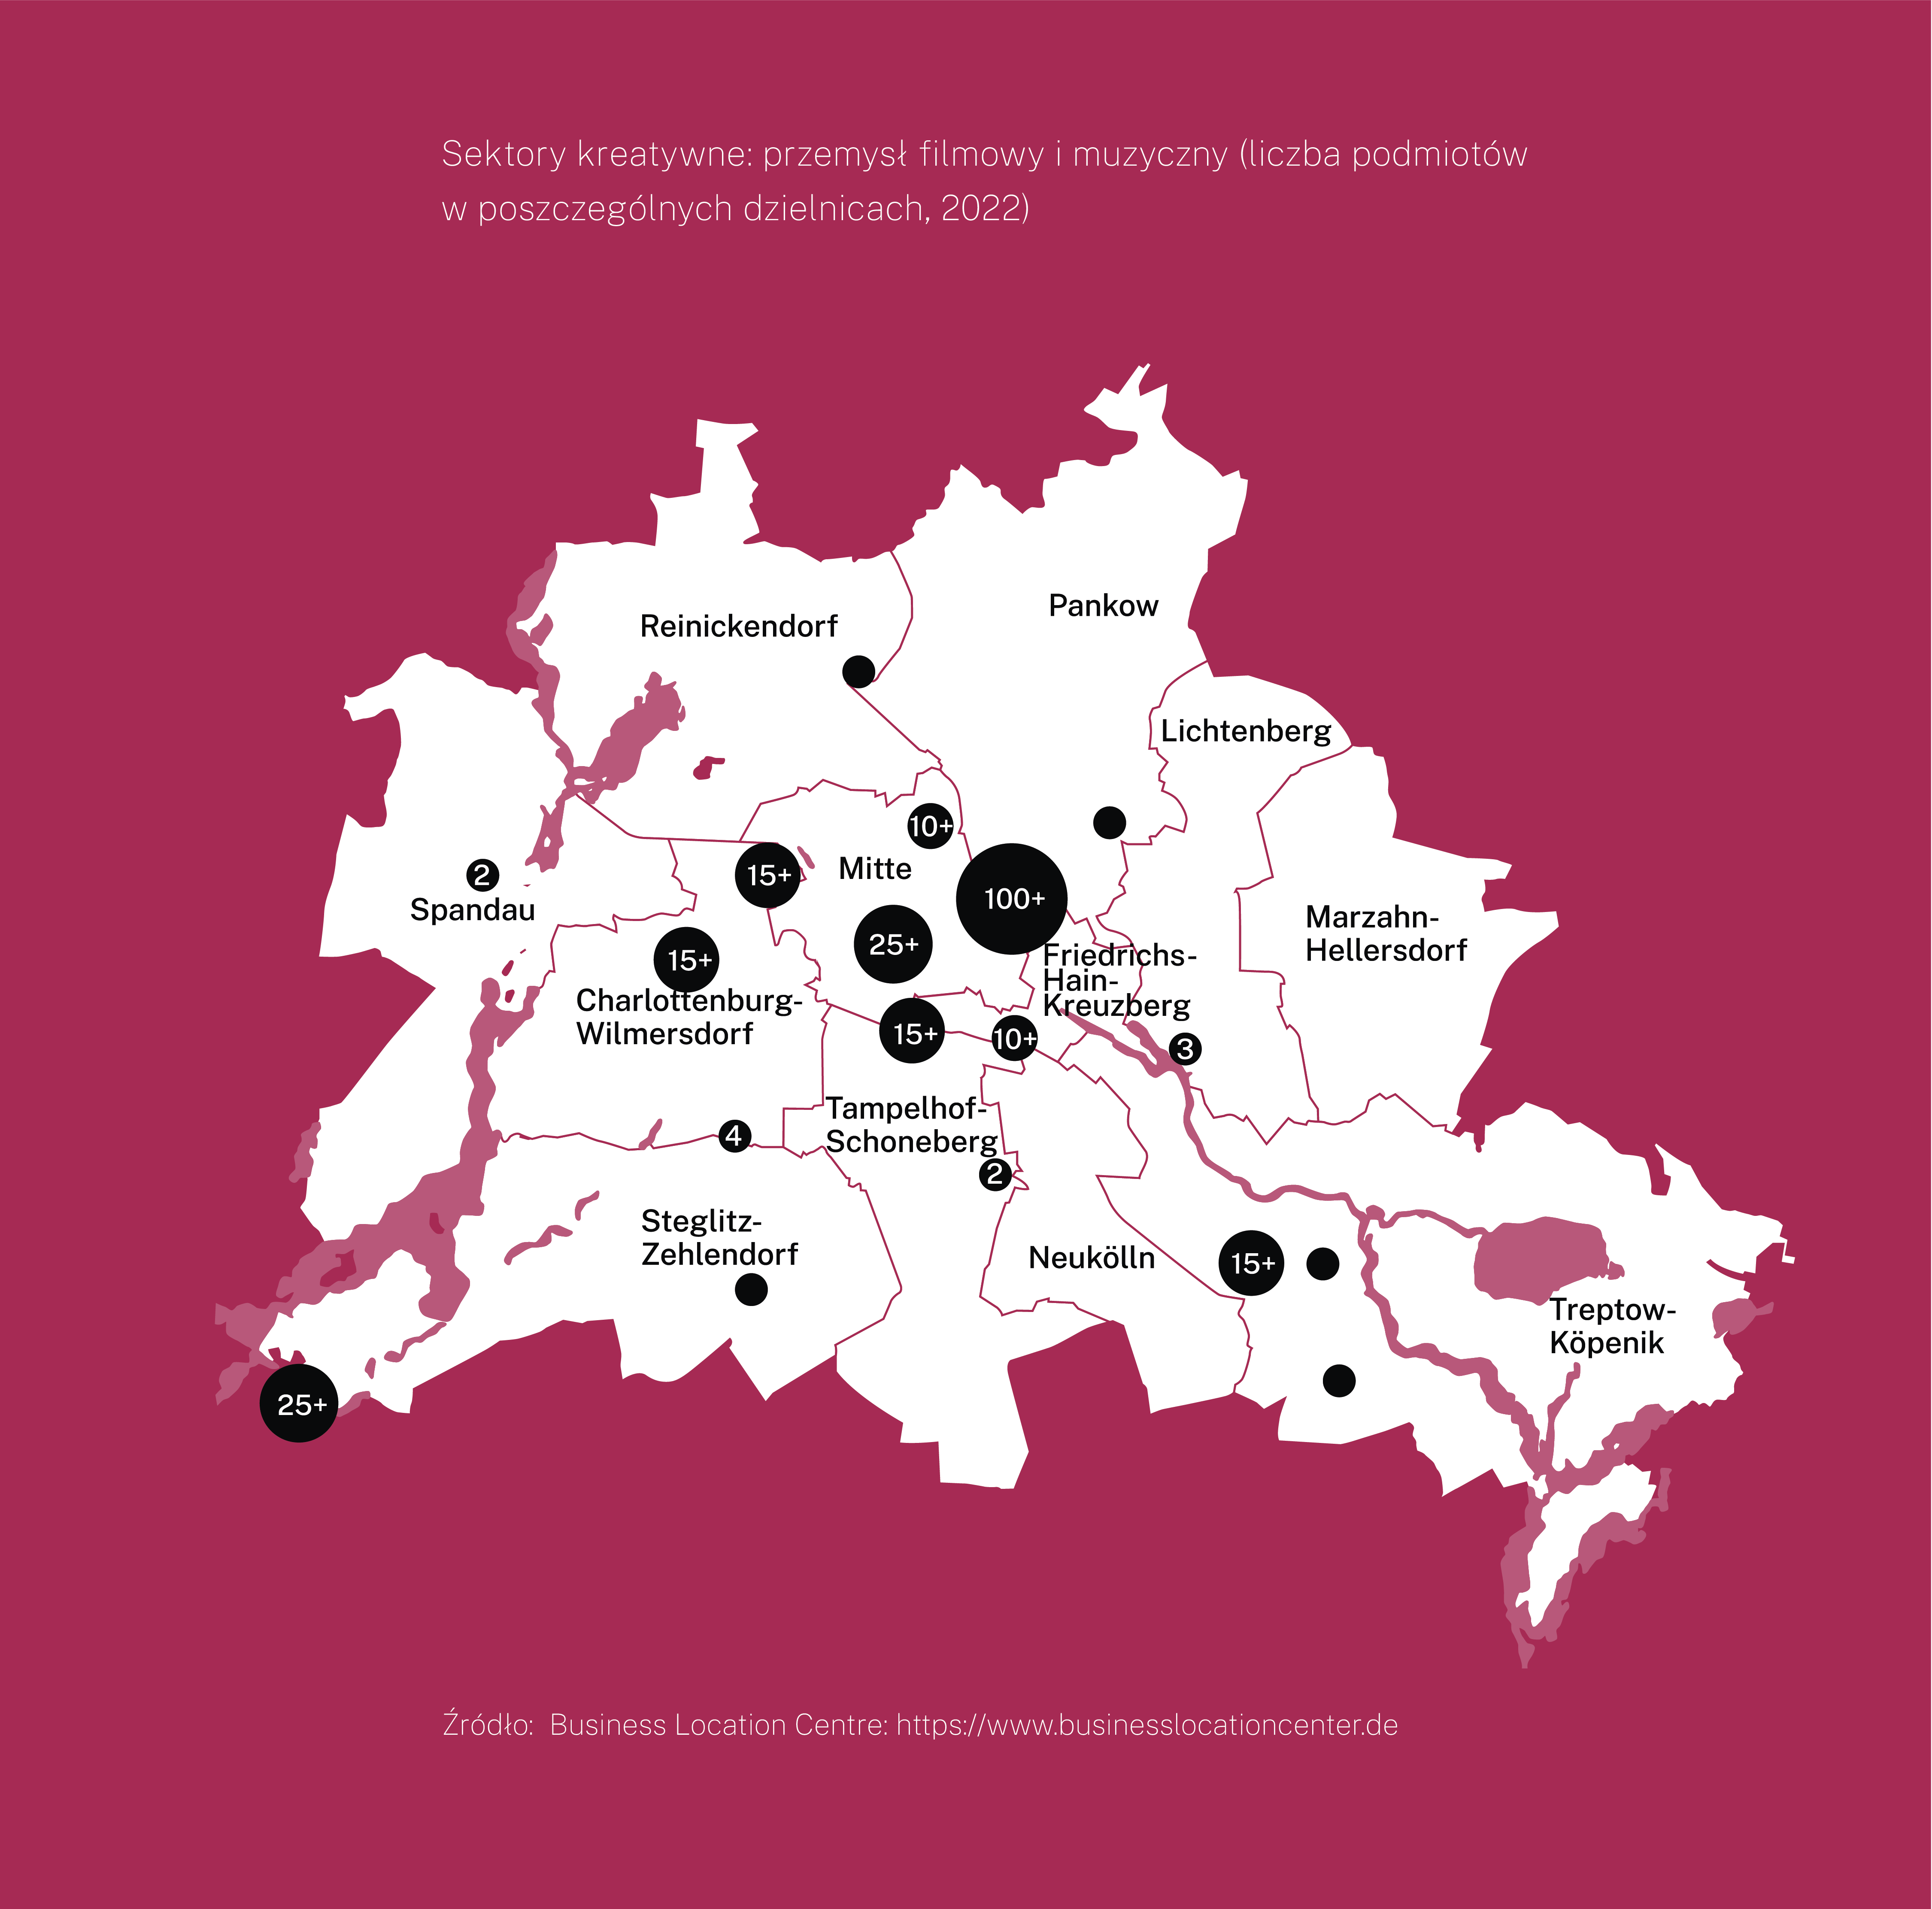 Mapa Berlina z podziałem na dzielnice. Na mapie zaznaczono liczbę firm związanych z przemysłem filmowym i muzycznym w roku 2022. Najwięcej podmiotów w dzielnicy Mitte - ponad 100. 